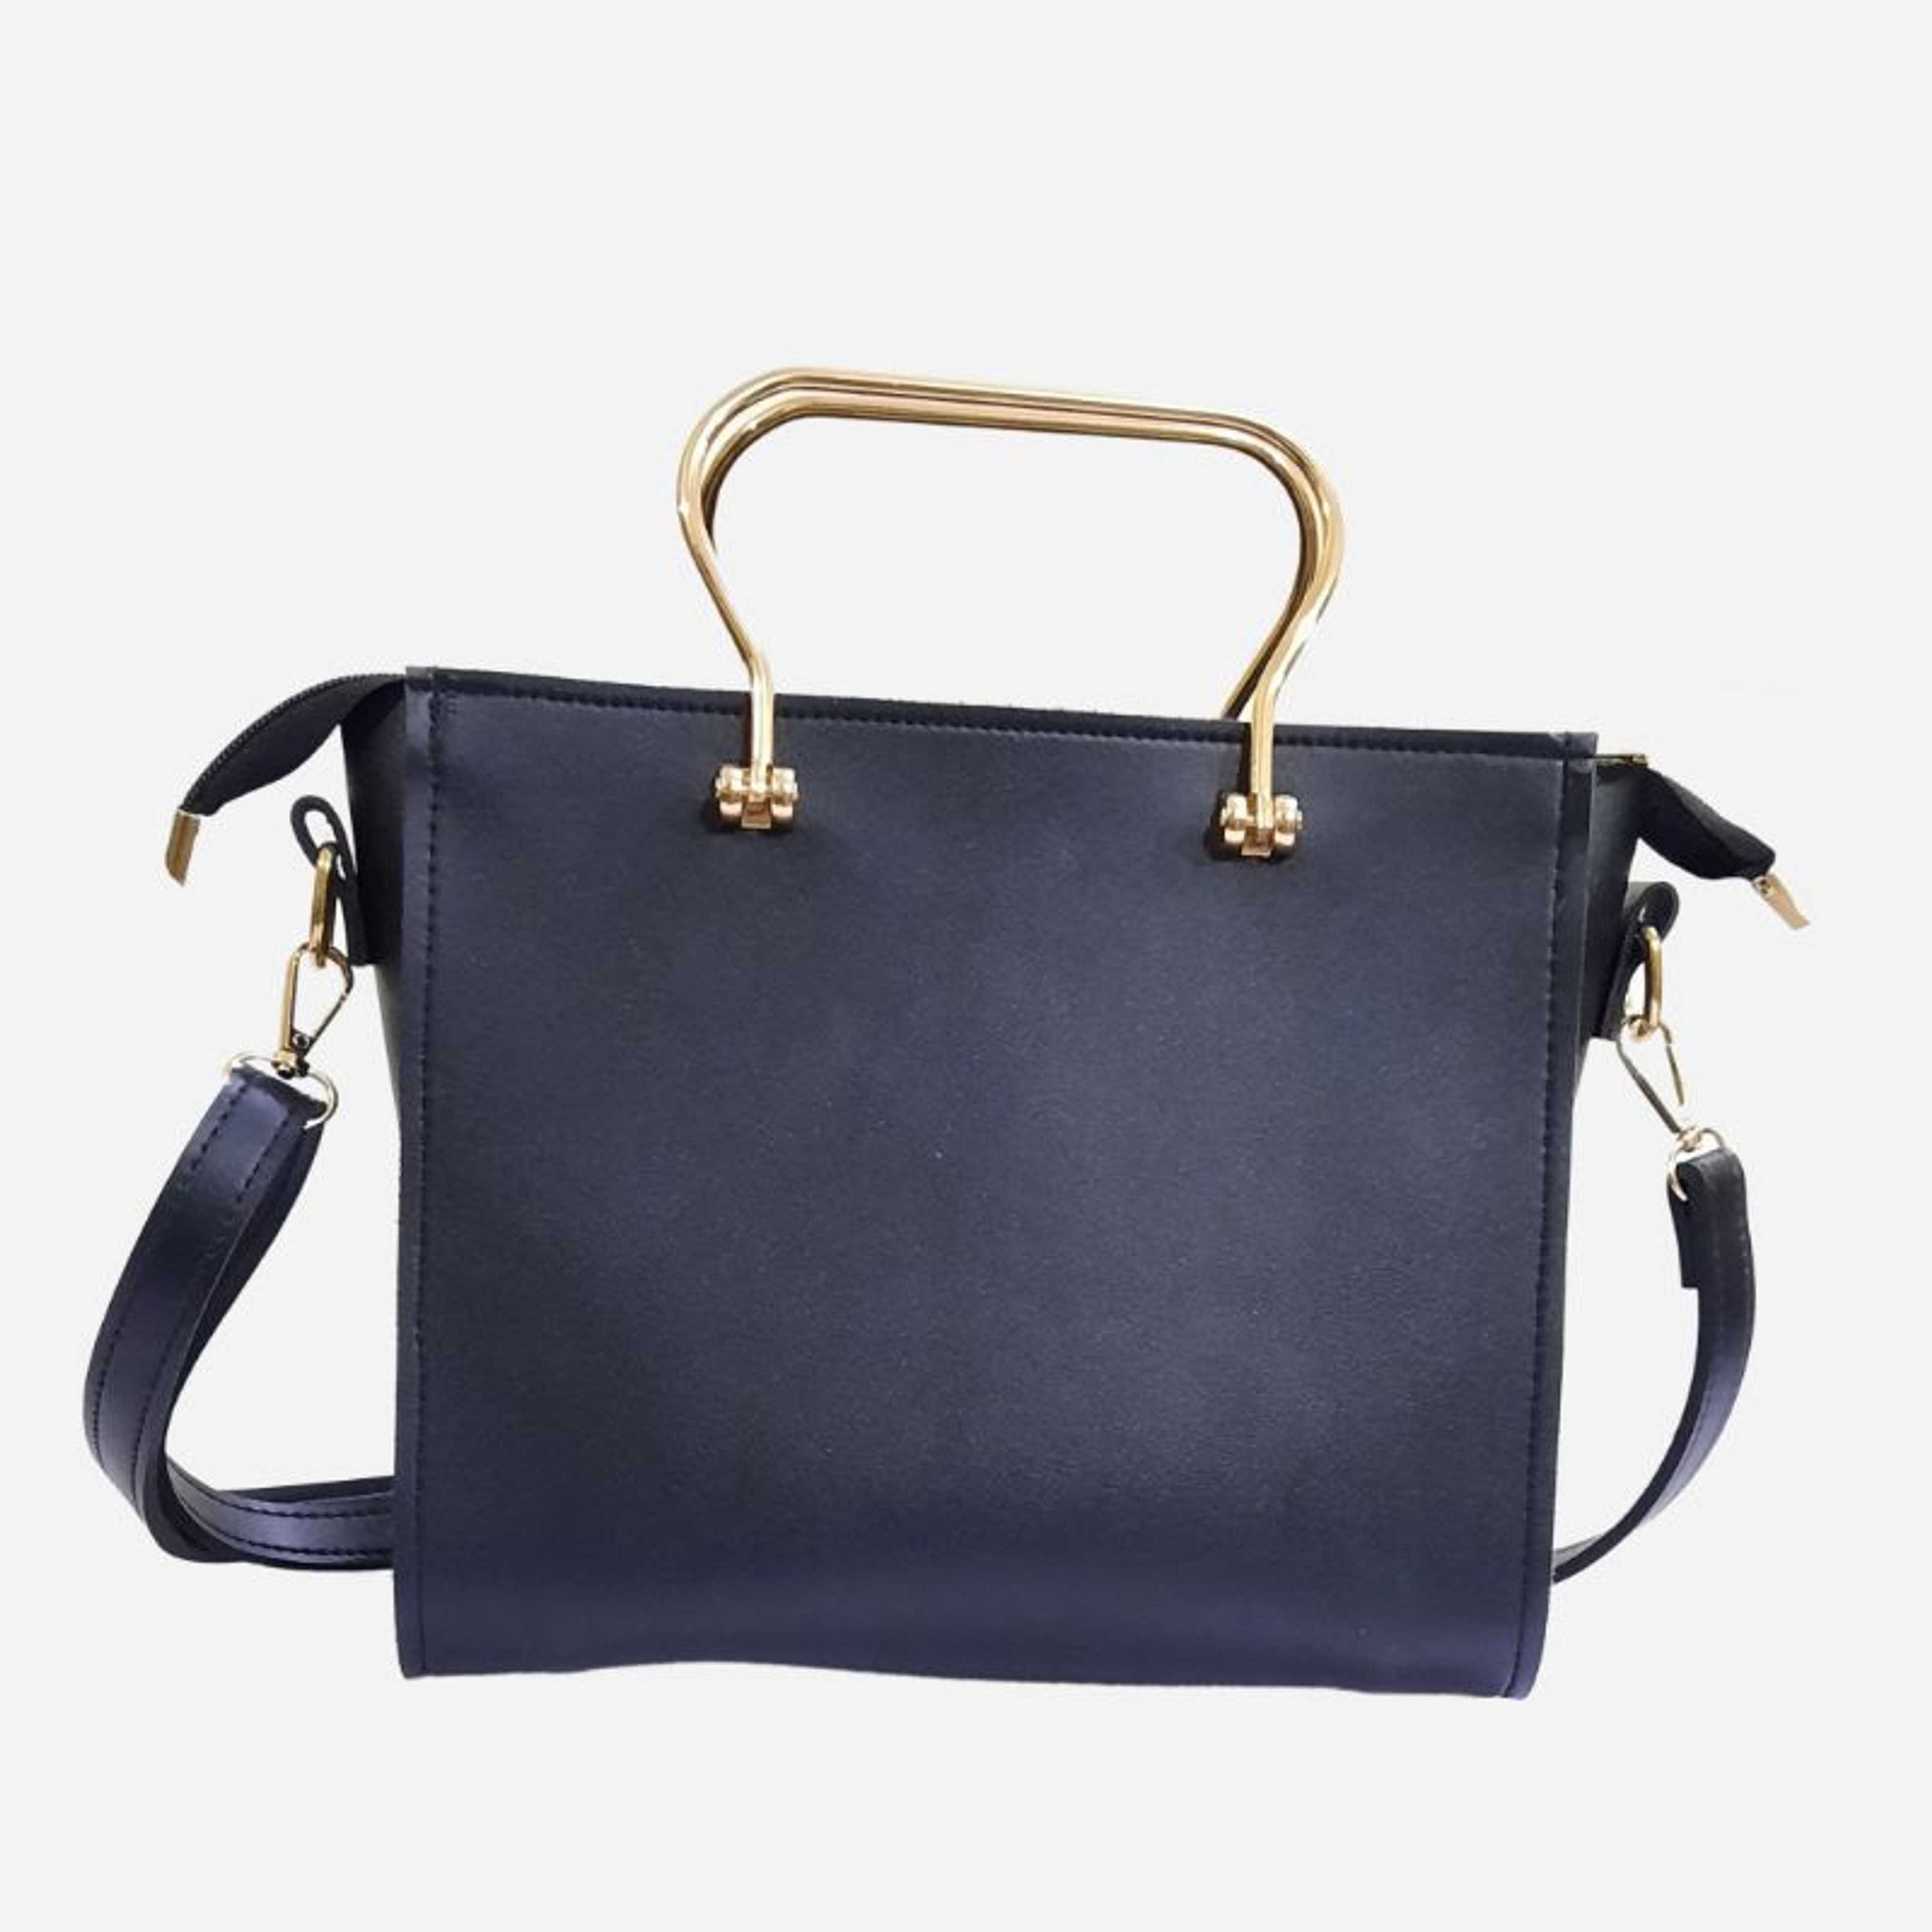 Handbag For Women - Black Sofia Handbag